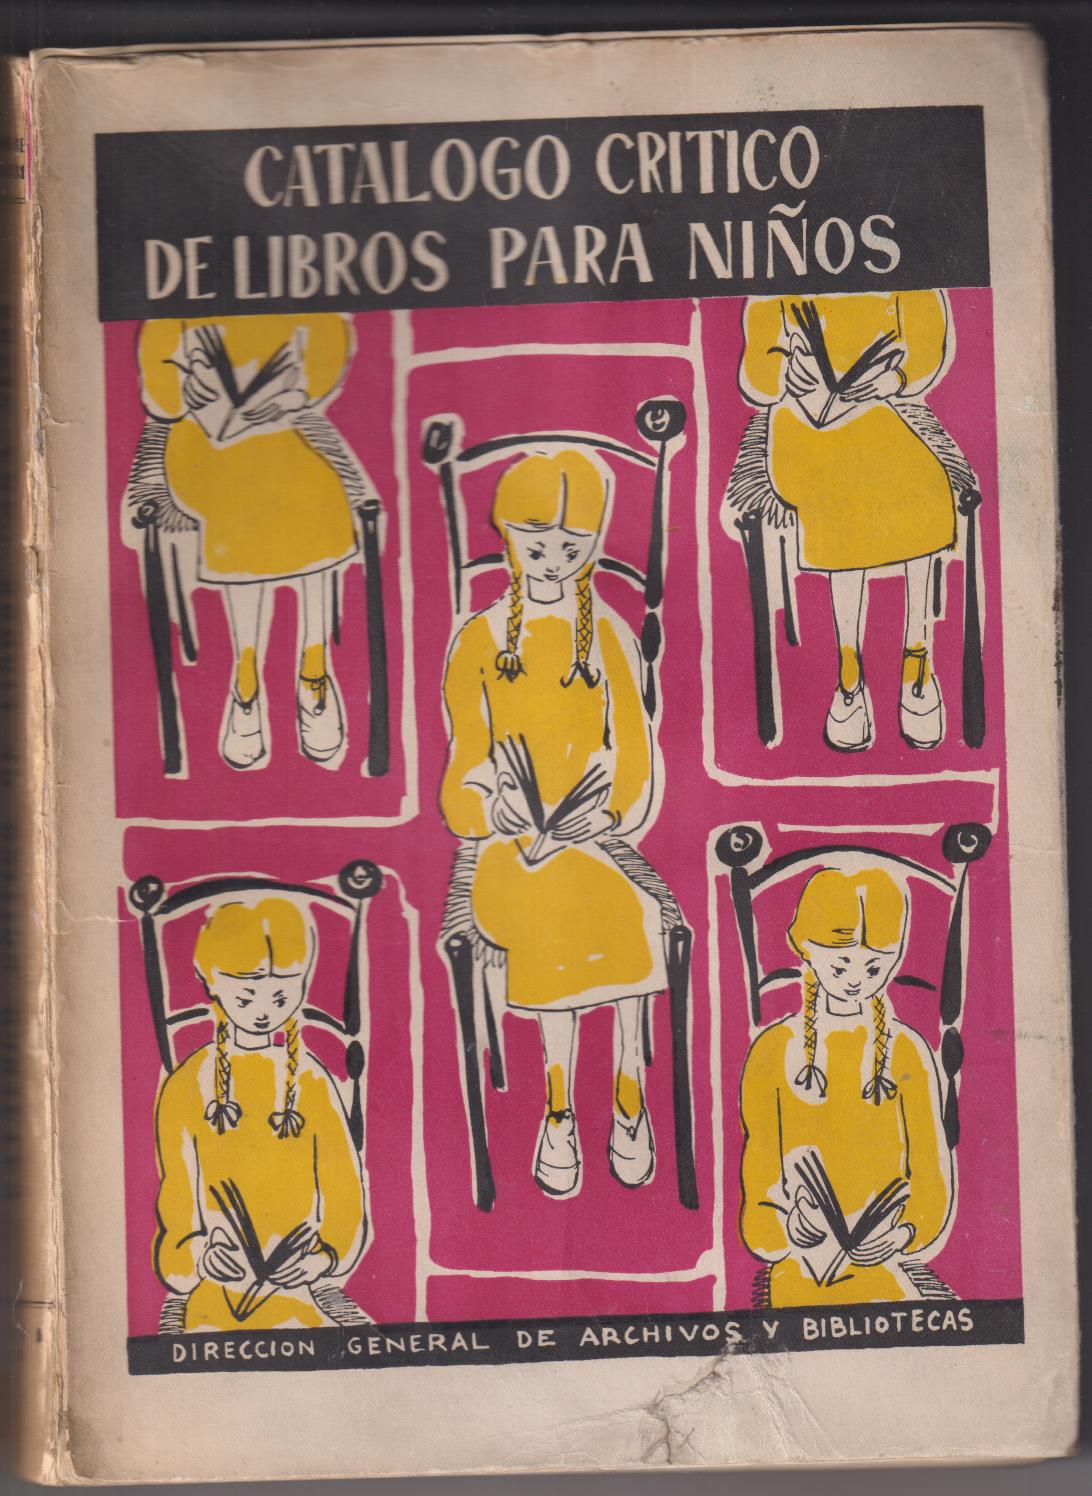 Catálogo de Libros para niños. Dirección General de Archivos y Bibliotecas, 1954